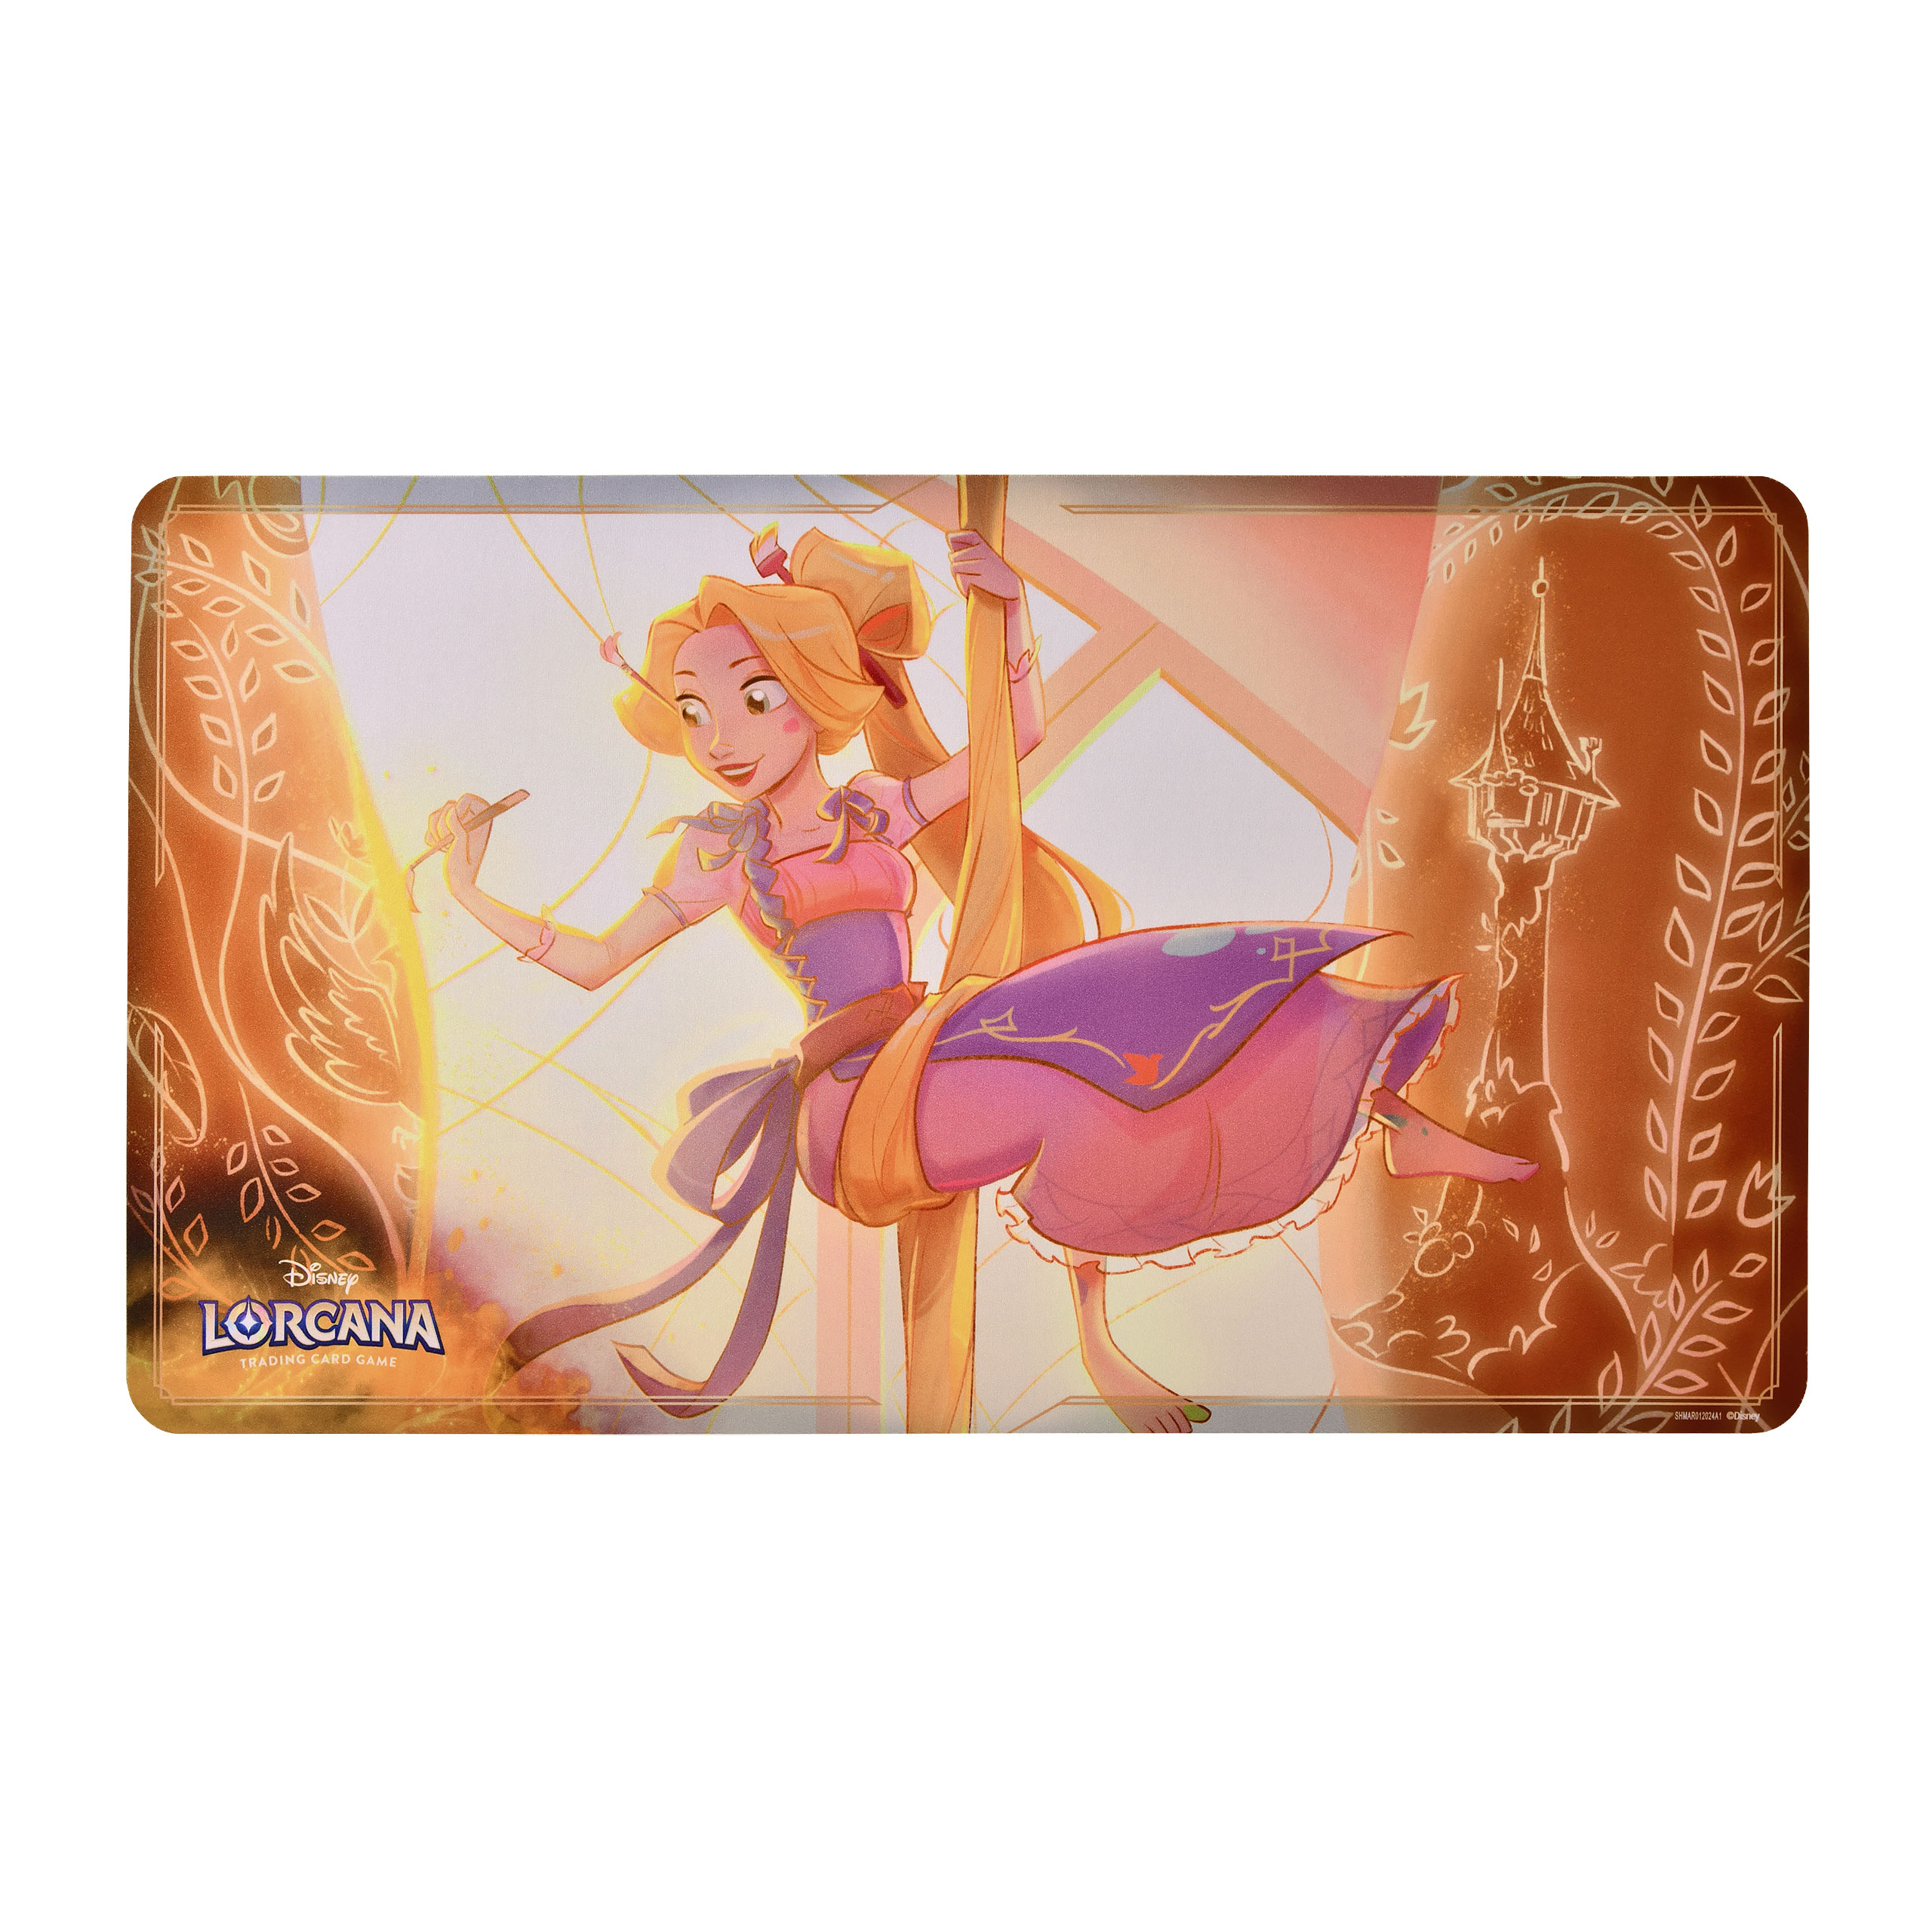 Disney Lorcana Playmat Tinkerbell - Ursula's Return Trading Card Game